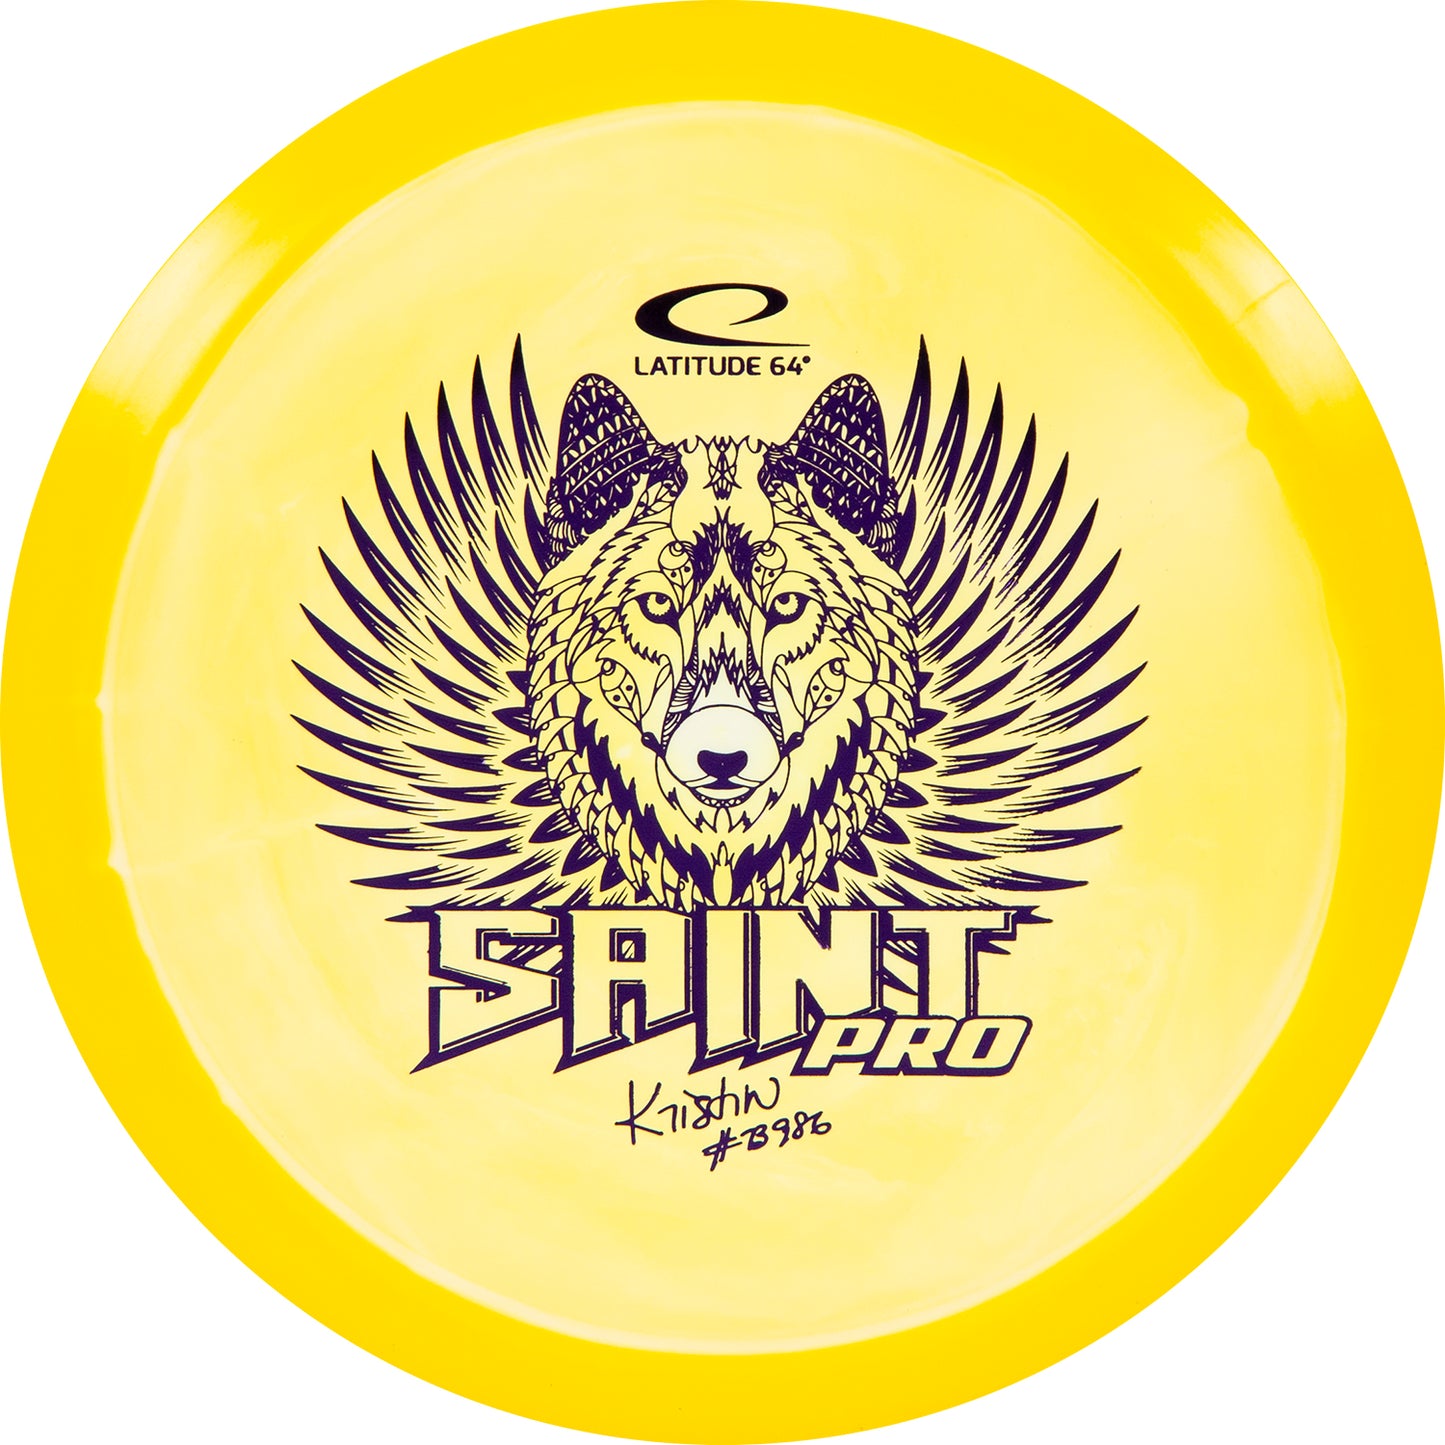 Latitude 64 Gold Orbit Saint Pro Kristin Tattar Team Series